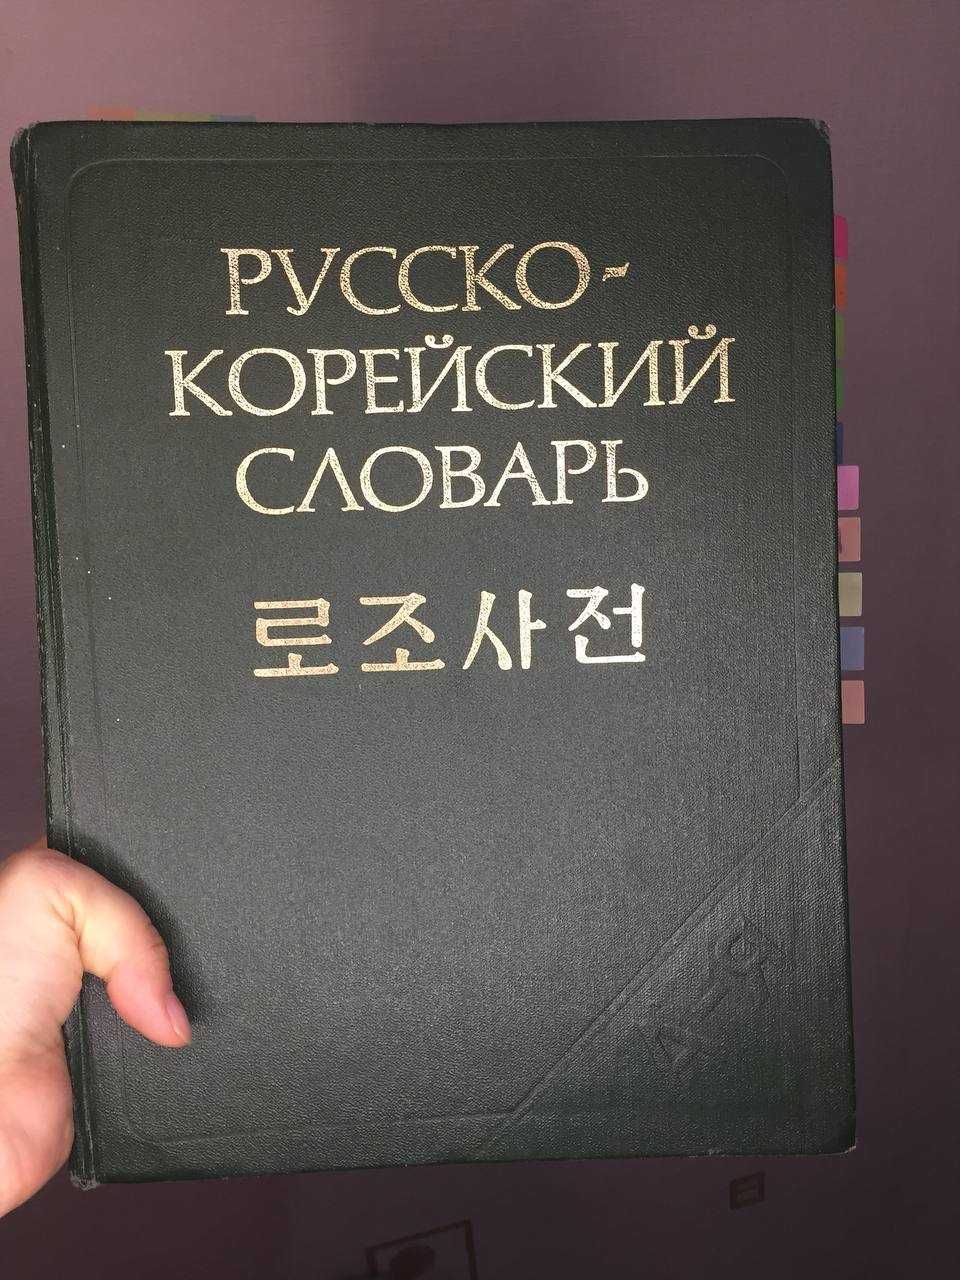 Словарь Русско+Корейский 3000 тенге